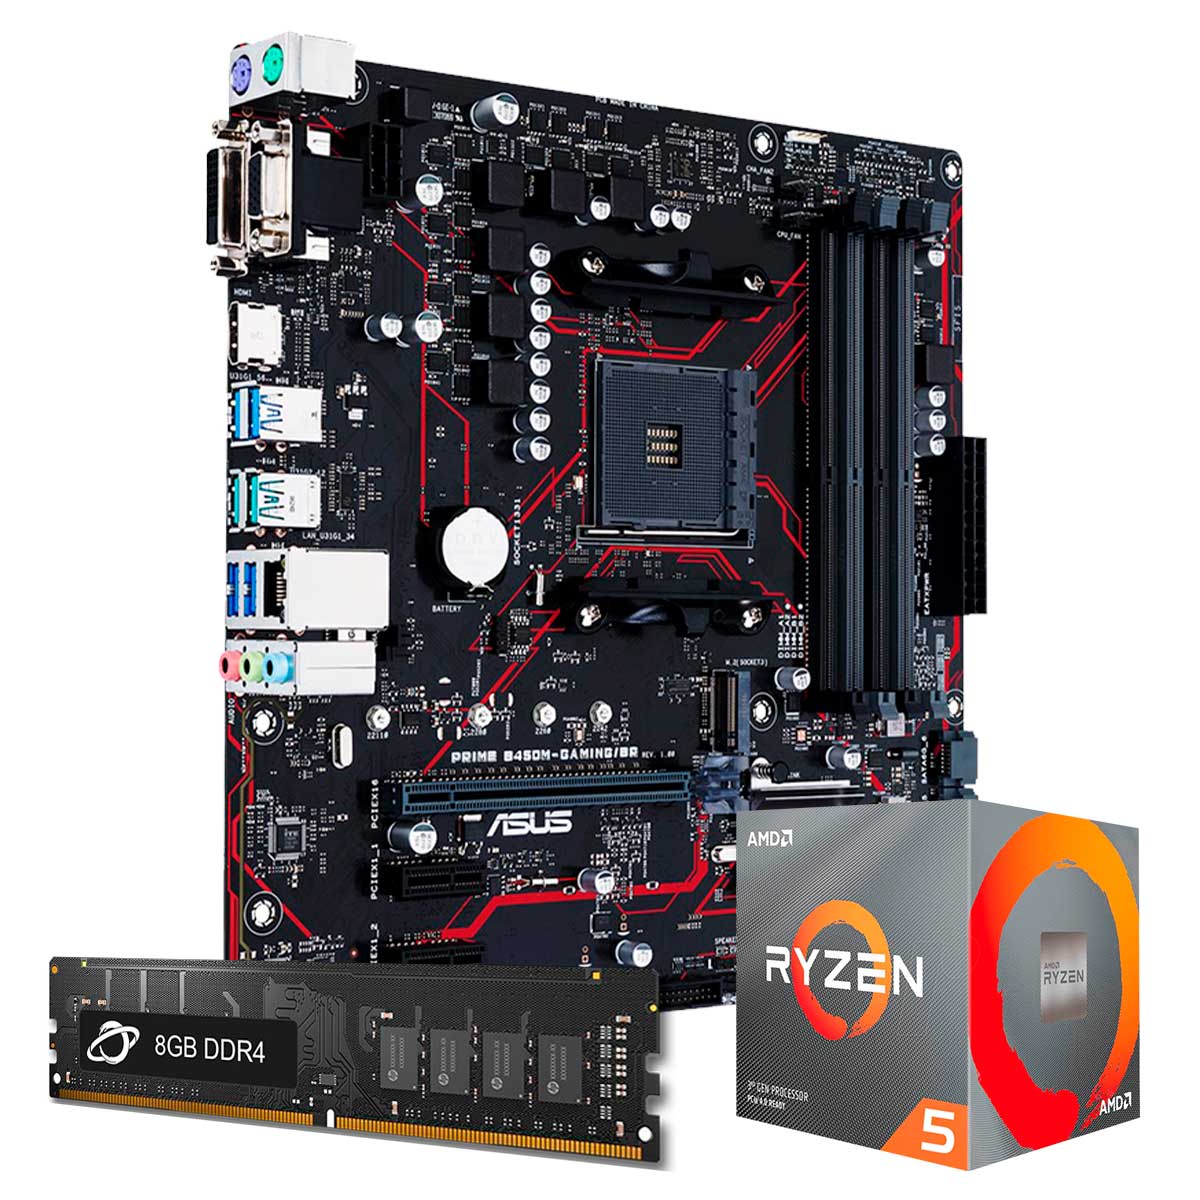 Kit Upgrade Processador AMD Ryzen™ 5 1600 AF + Placa Mãe Asus Prime B450M GAMING/BR + Memória 8GB DDR4